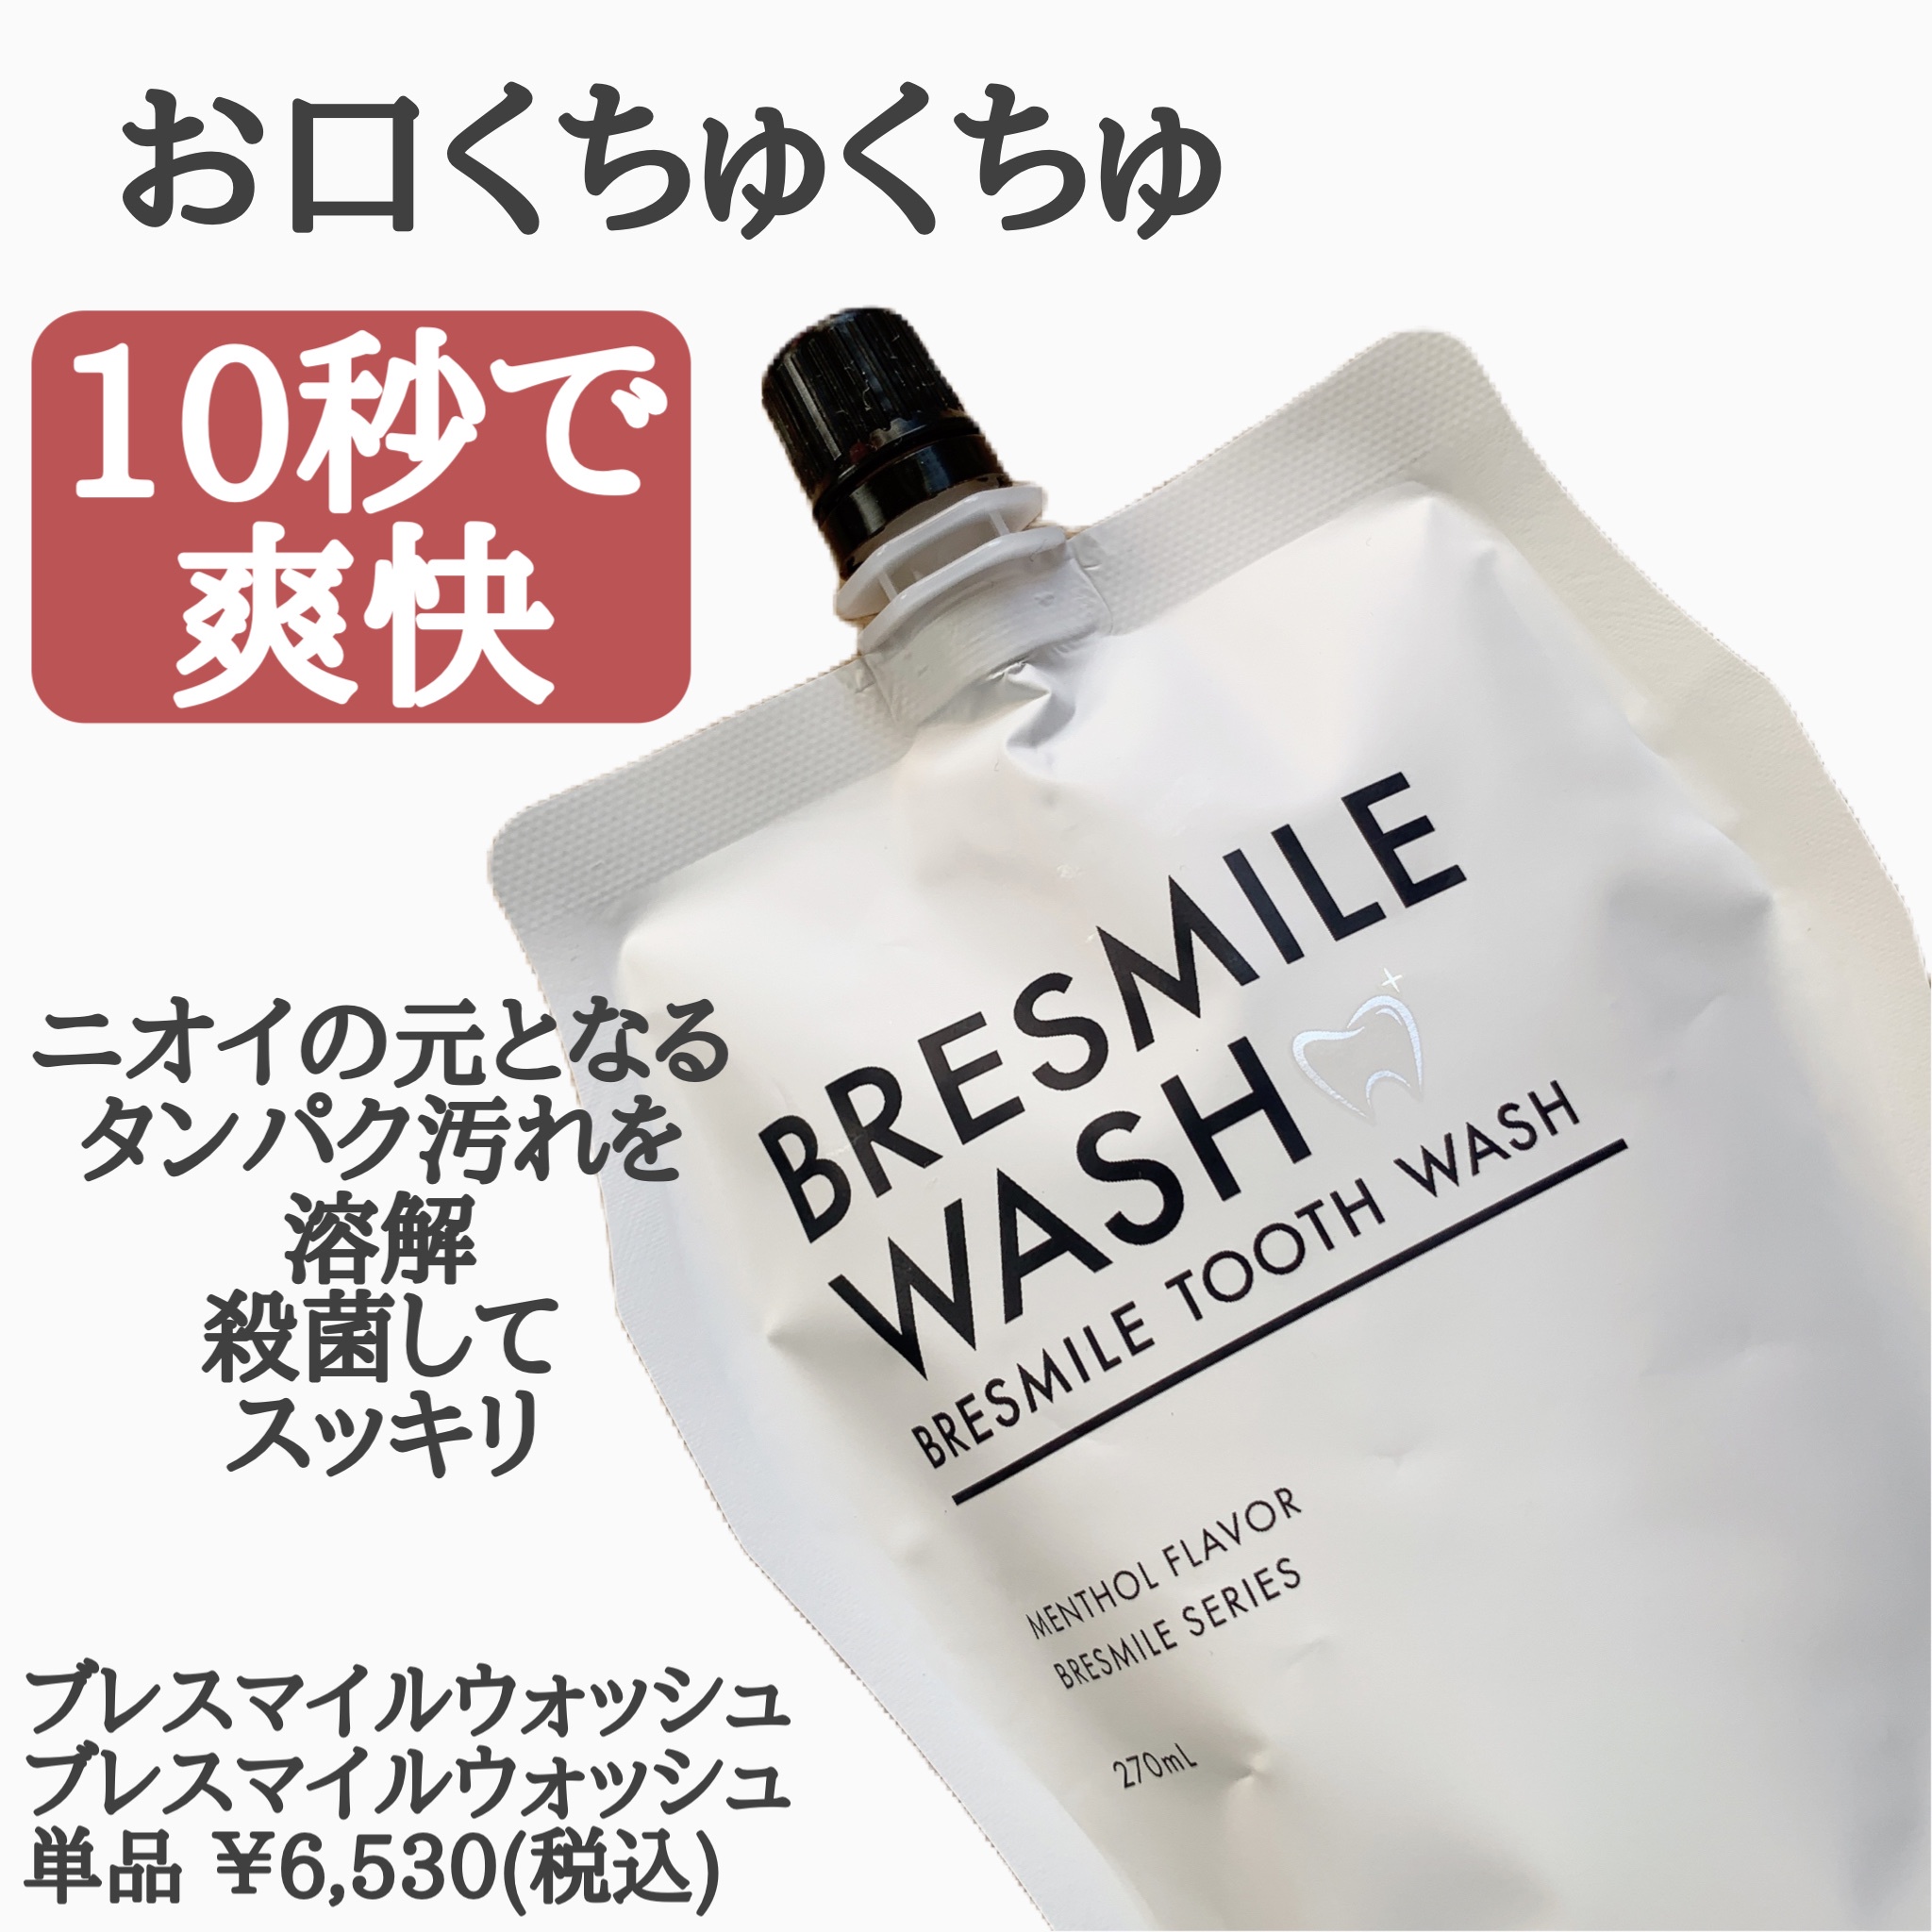 高級ブランド - BRESMILE その他 WASH 270ml - 口臭防止・エチケット